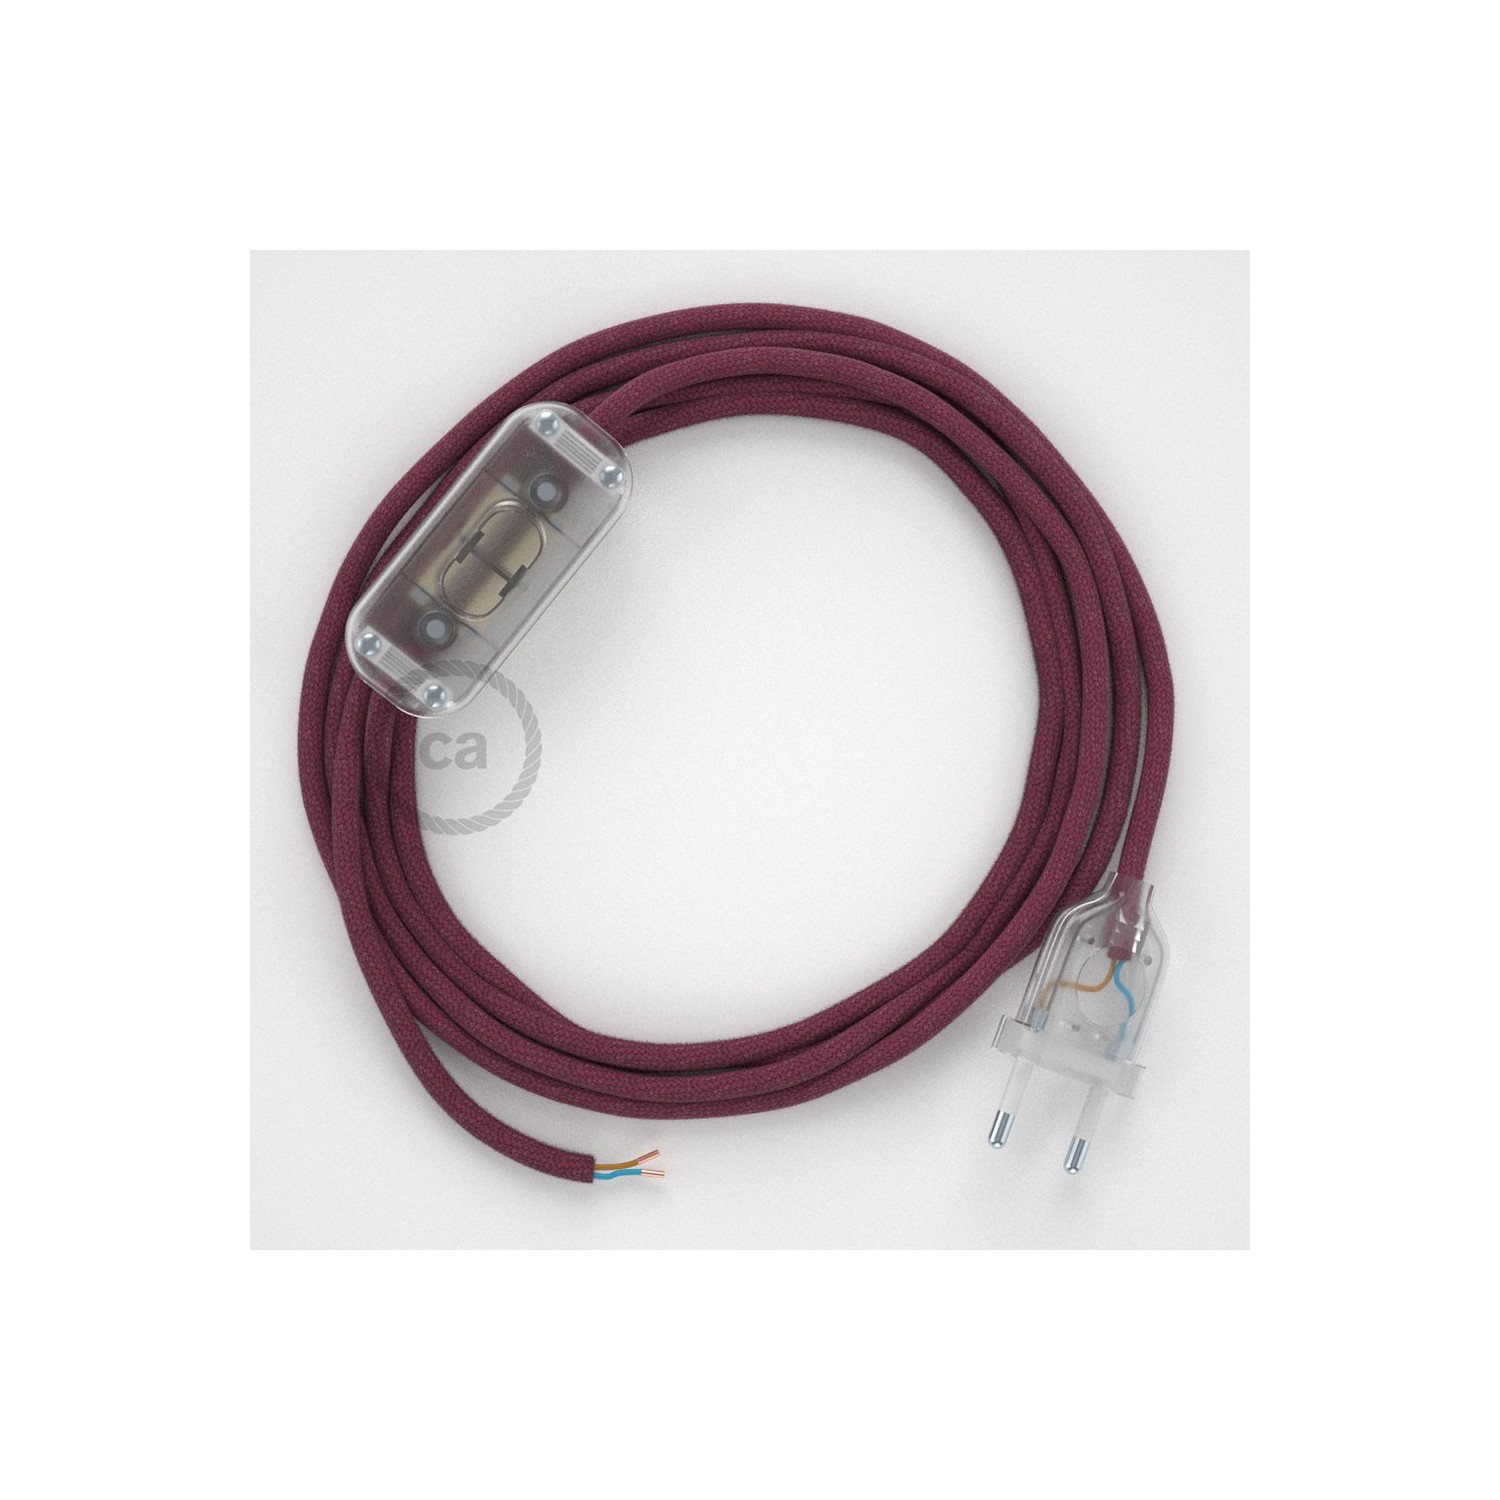 Cordon pour lampe, câble RC32 Coton Marc De Raisin 1,80 m. Choisissez la couleur de la fiche et de l'interrupteur!